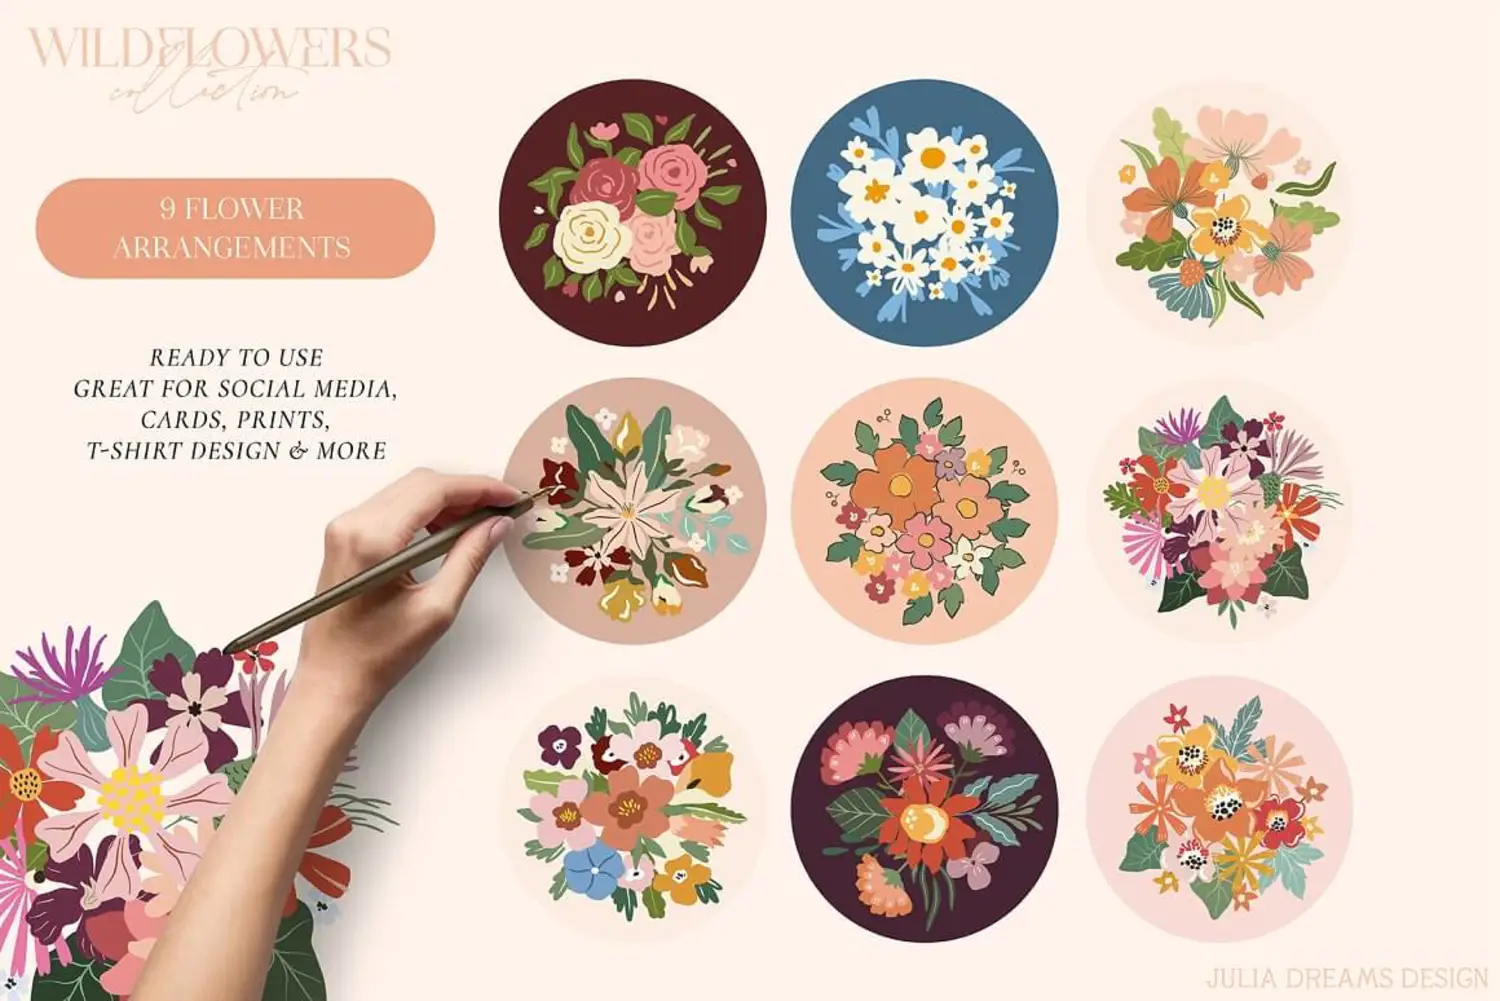 15 花朵系列无缝背景矢量图案手绘插画素材 (ai,eps)Wildflowers Collection 6635876